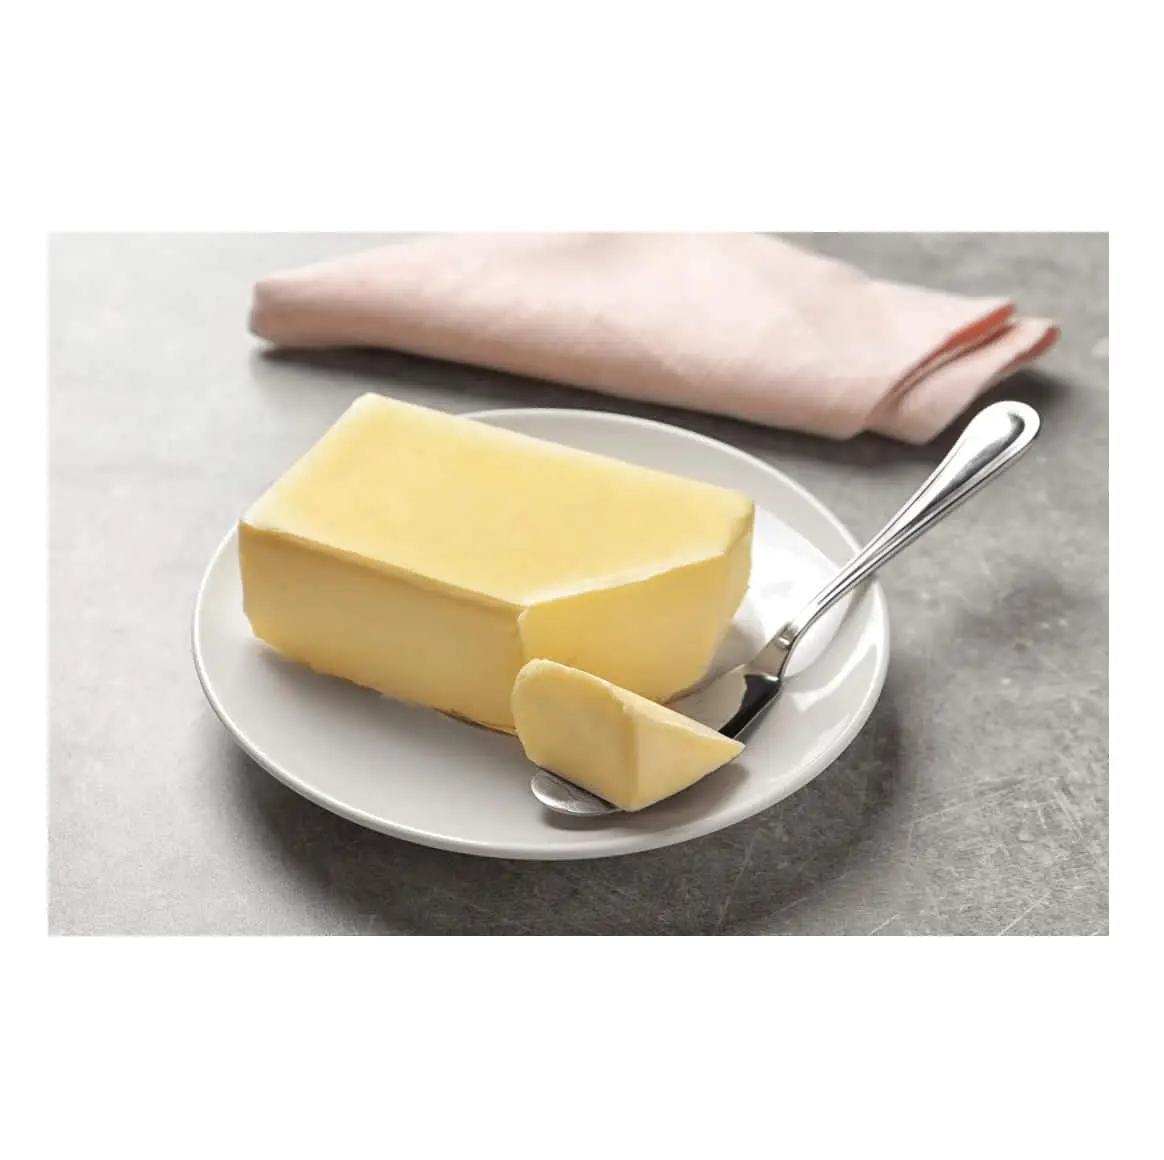 Manteiga natural sem sal do leite de vaca 82%/Manteiga de gado 25kg sacos Manteiga Natural sem sal/Manteiga creme de leite sem sal